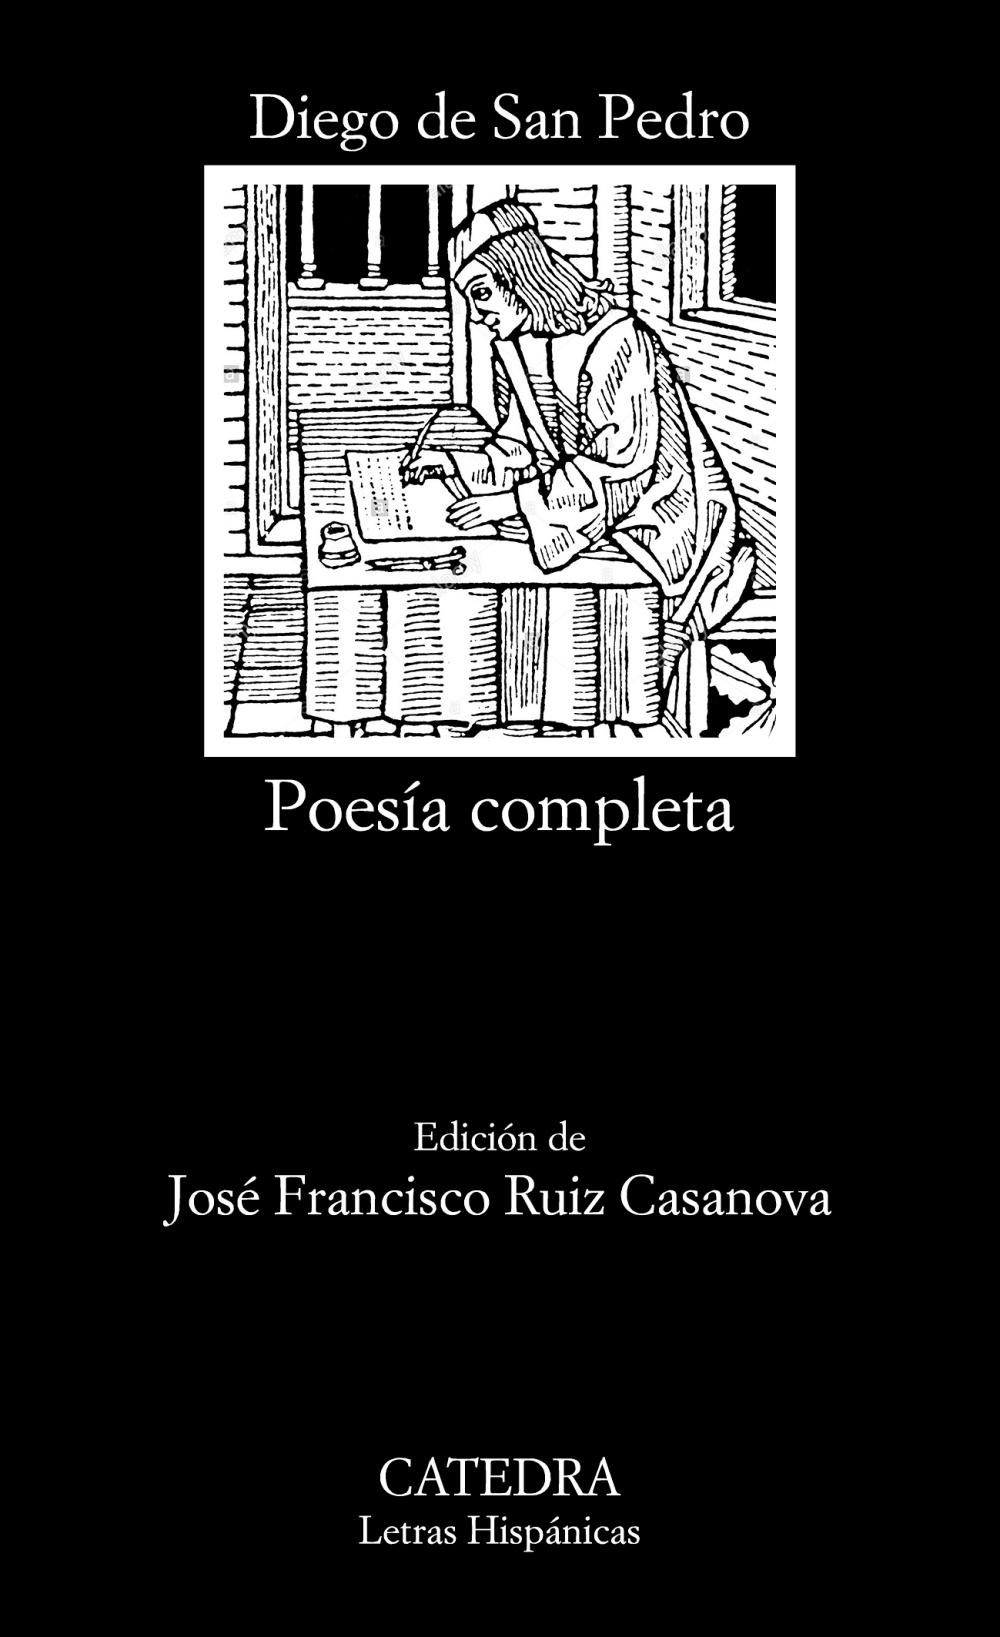 Poesía completa "(Diego de San Pedro)". 